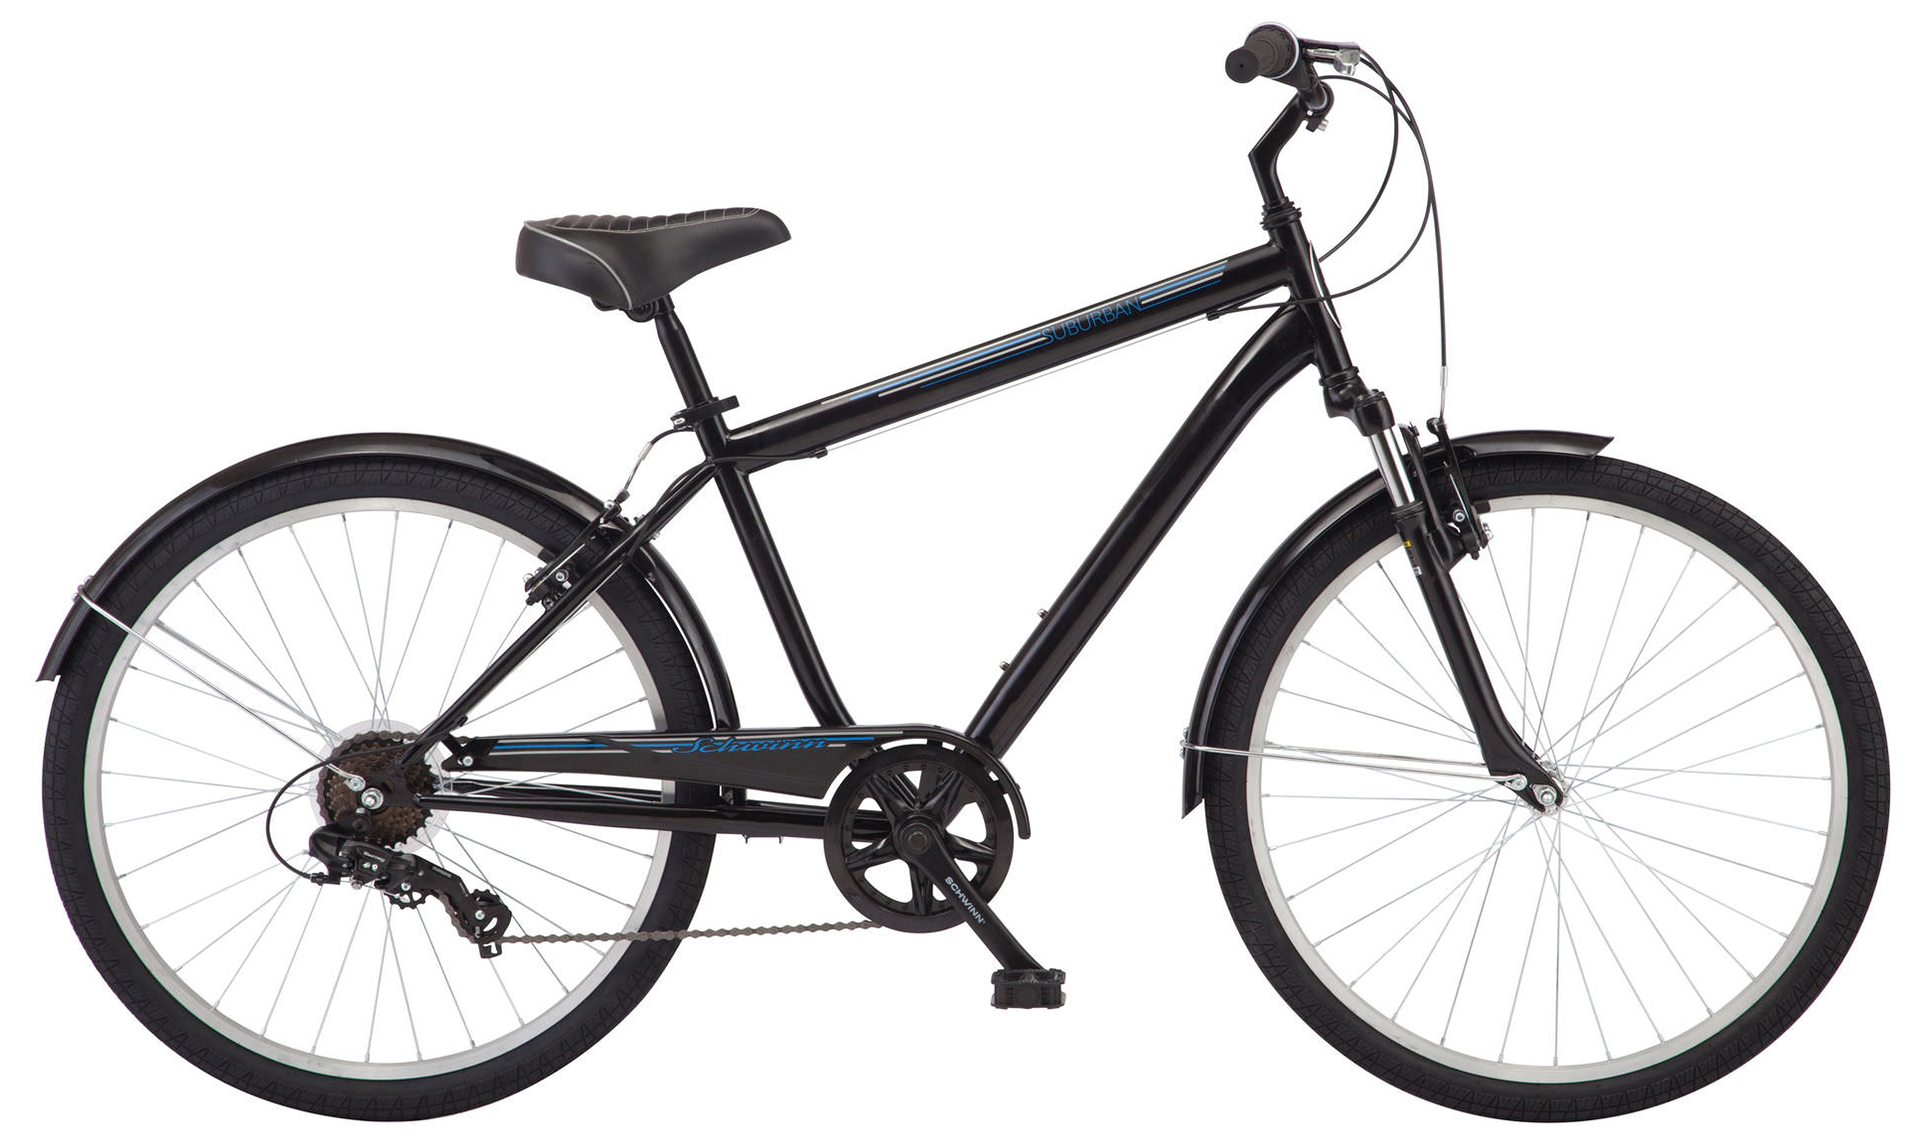  Отзывы о Городском велосипеде Schwinn Suburban 2020